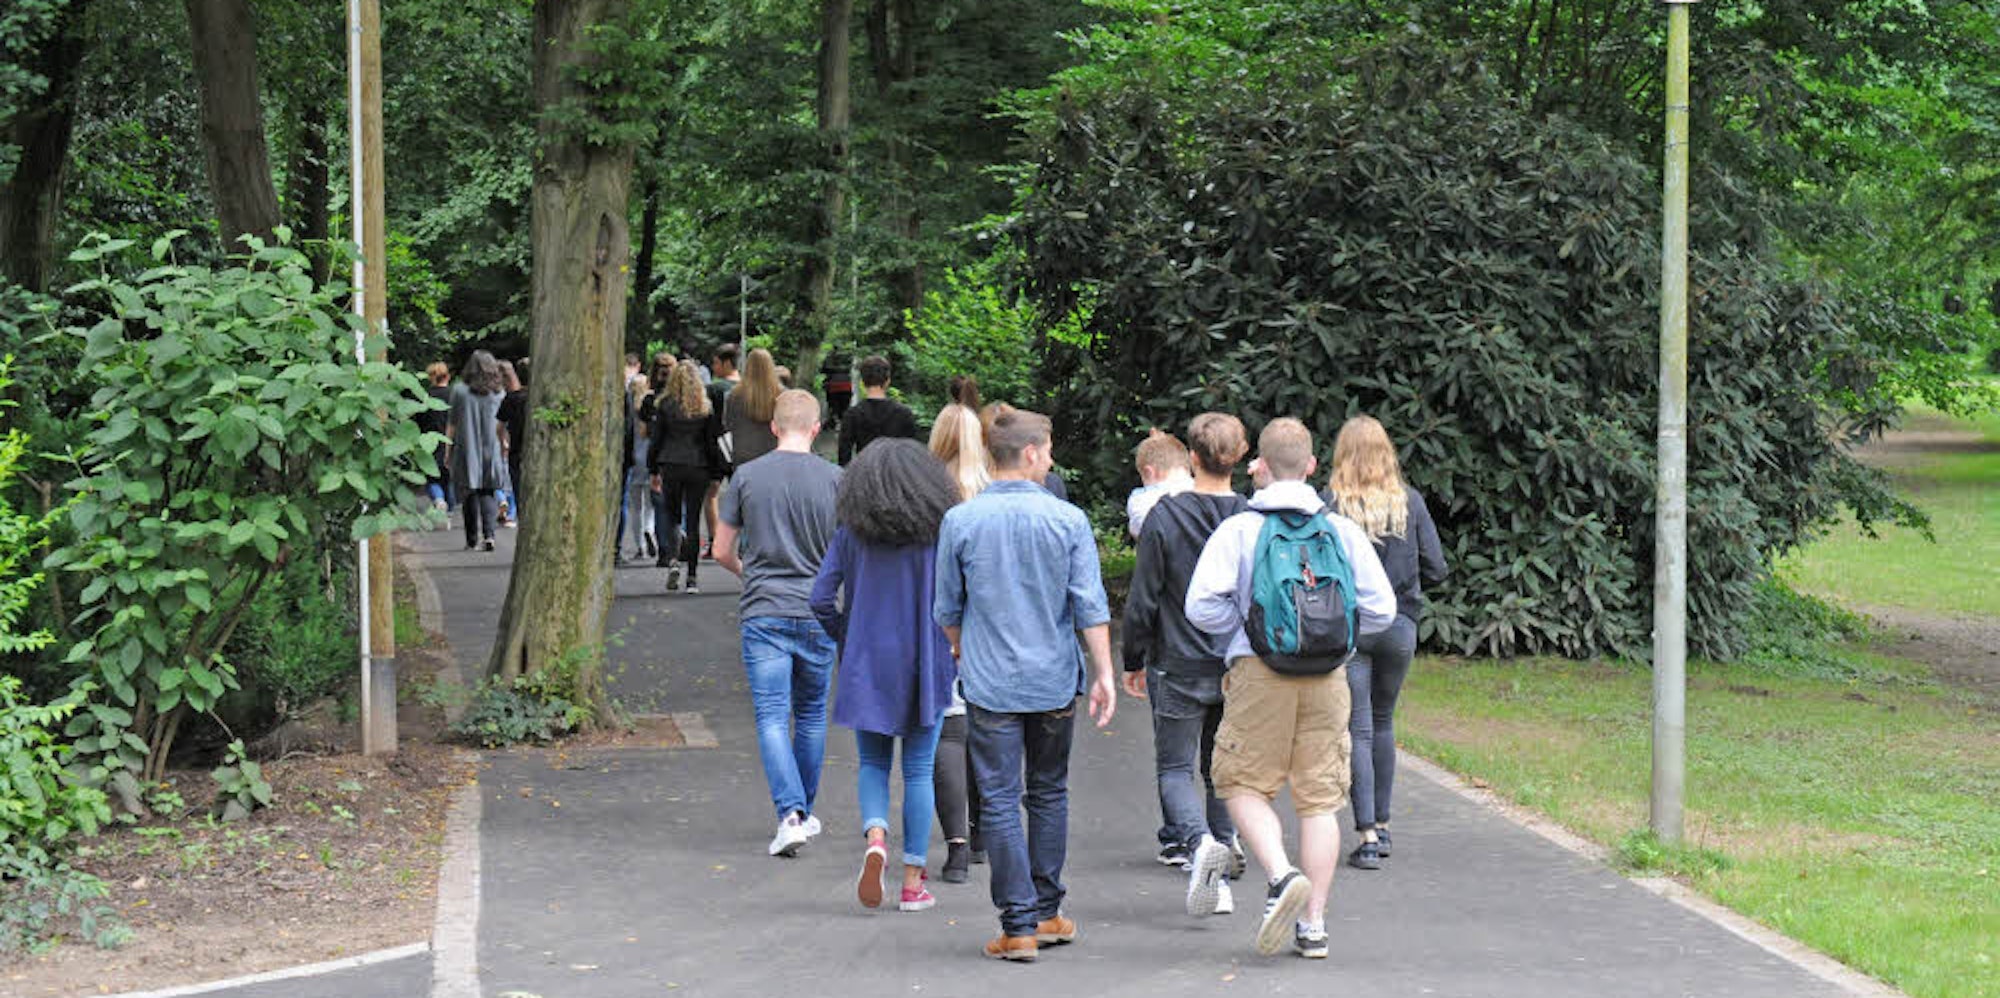 Zahlreiche Schüler des nahen Lise-Meitner-Gymnasiums und der Realschule Am Stadtpark nutzen täglich den Weg.